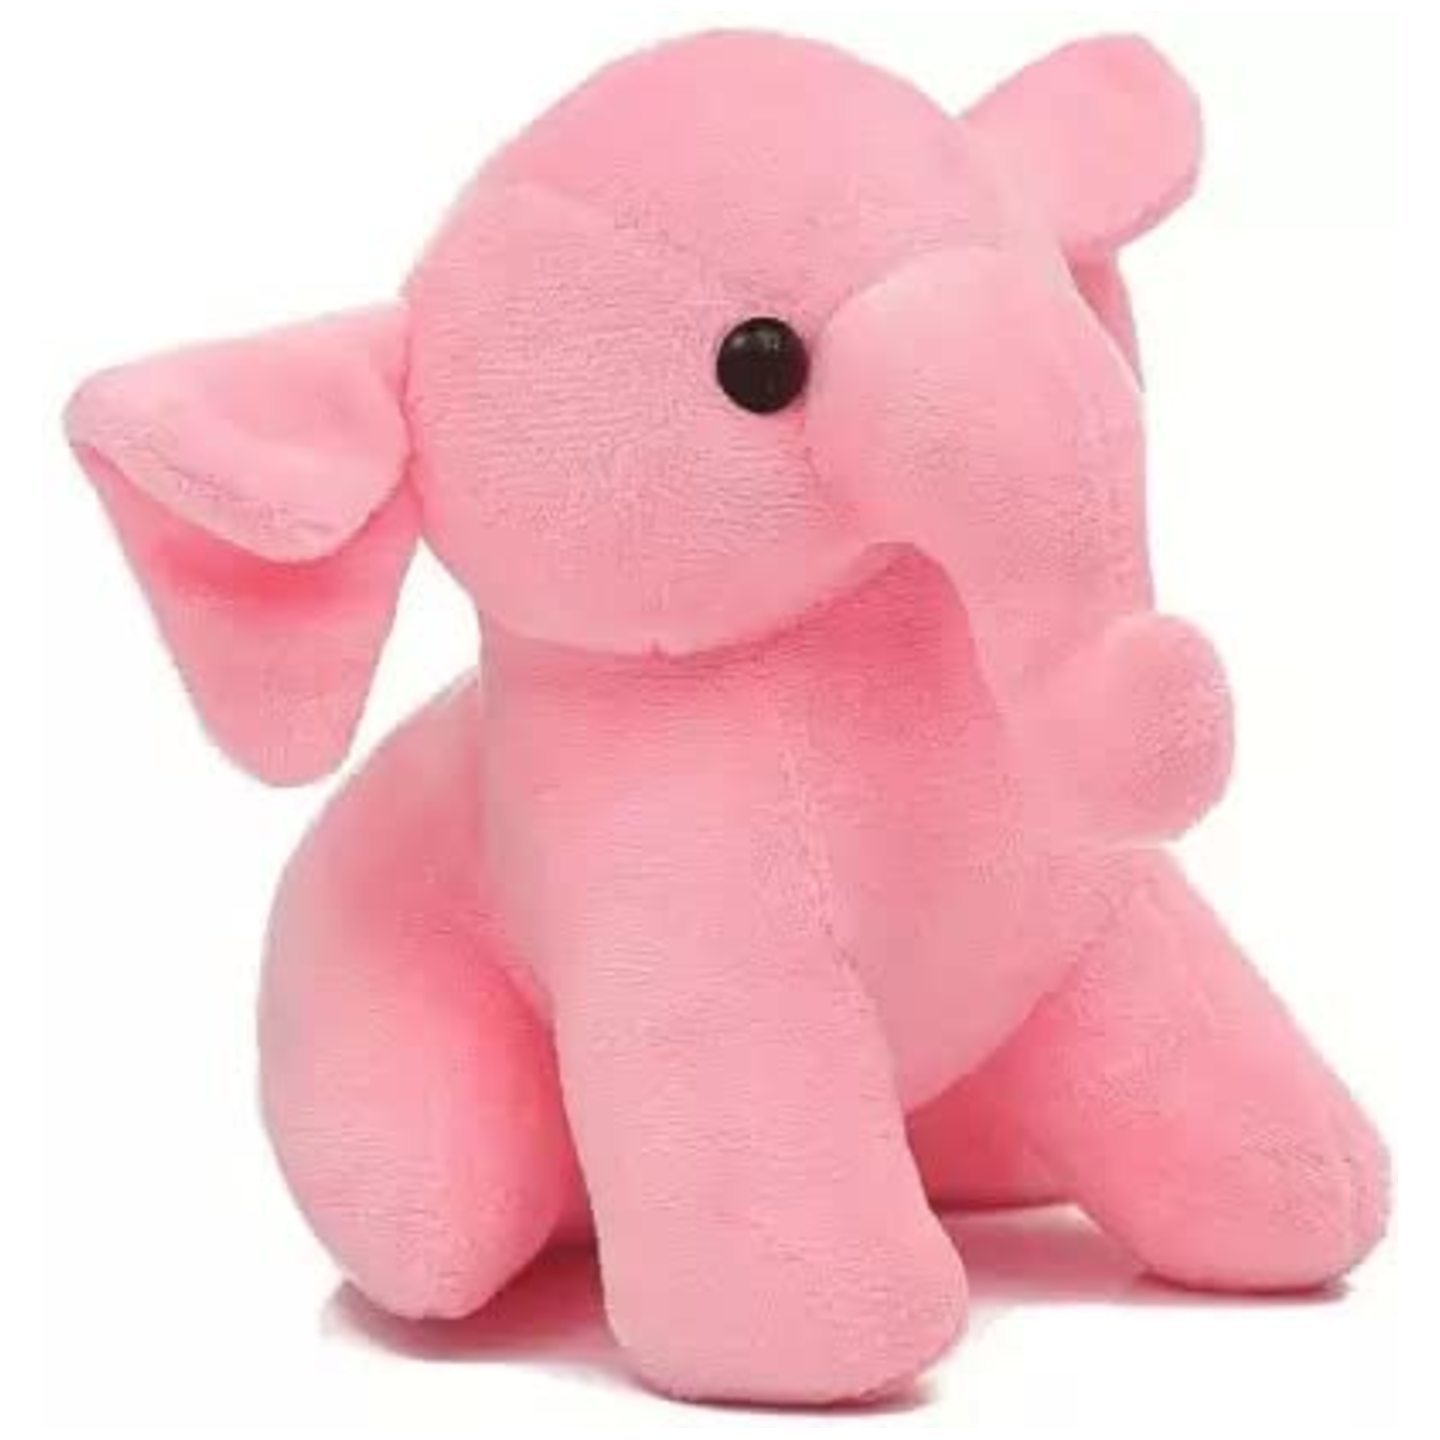 Cute Elephant soft toy - 30 cm